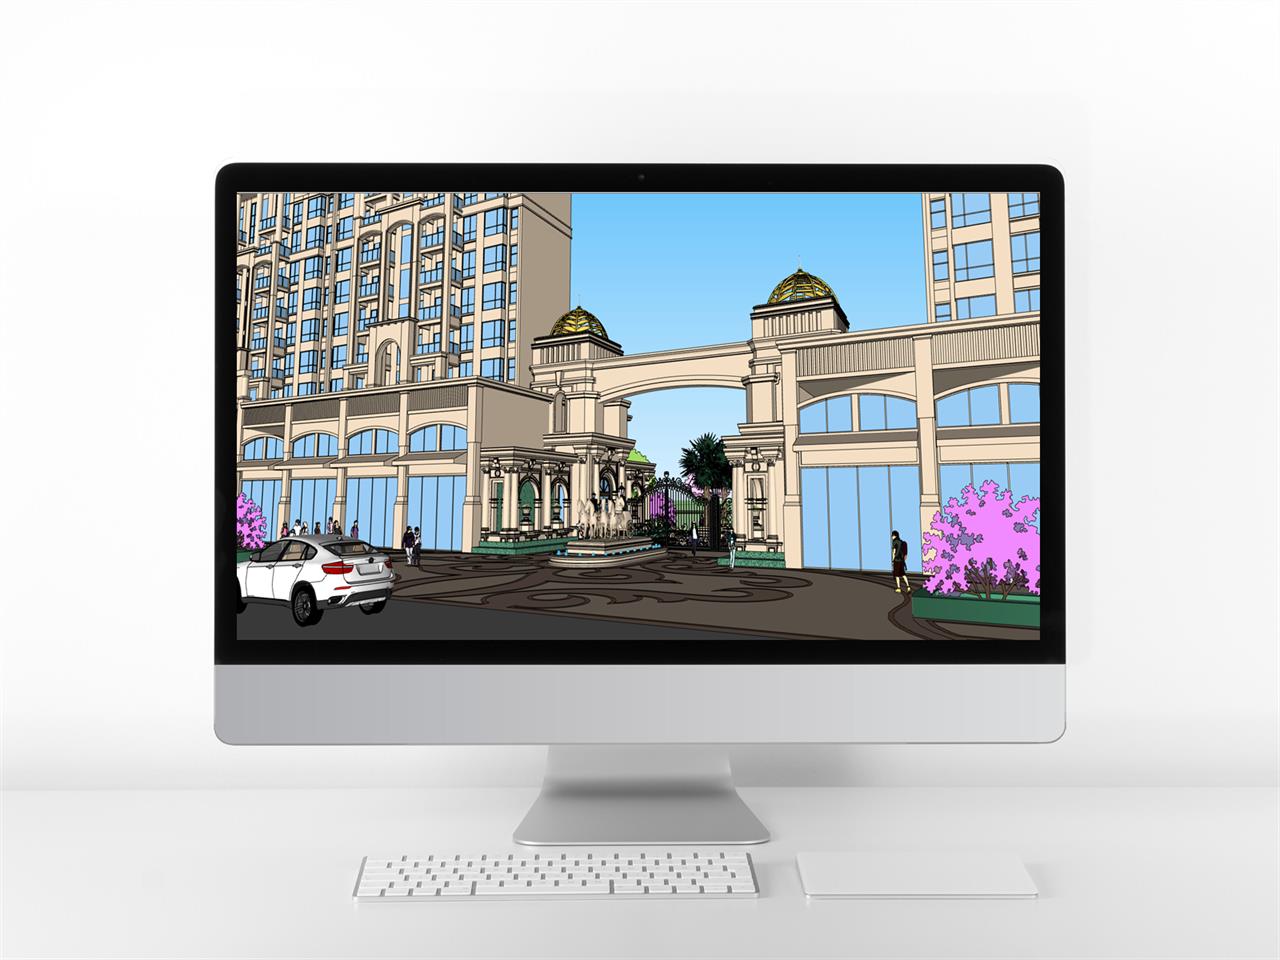 스타일 나는 유럽건축 환경 웹툰배경 템플릿 제작 미리보기